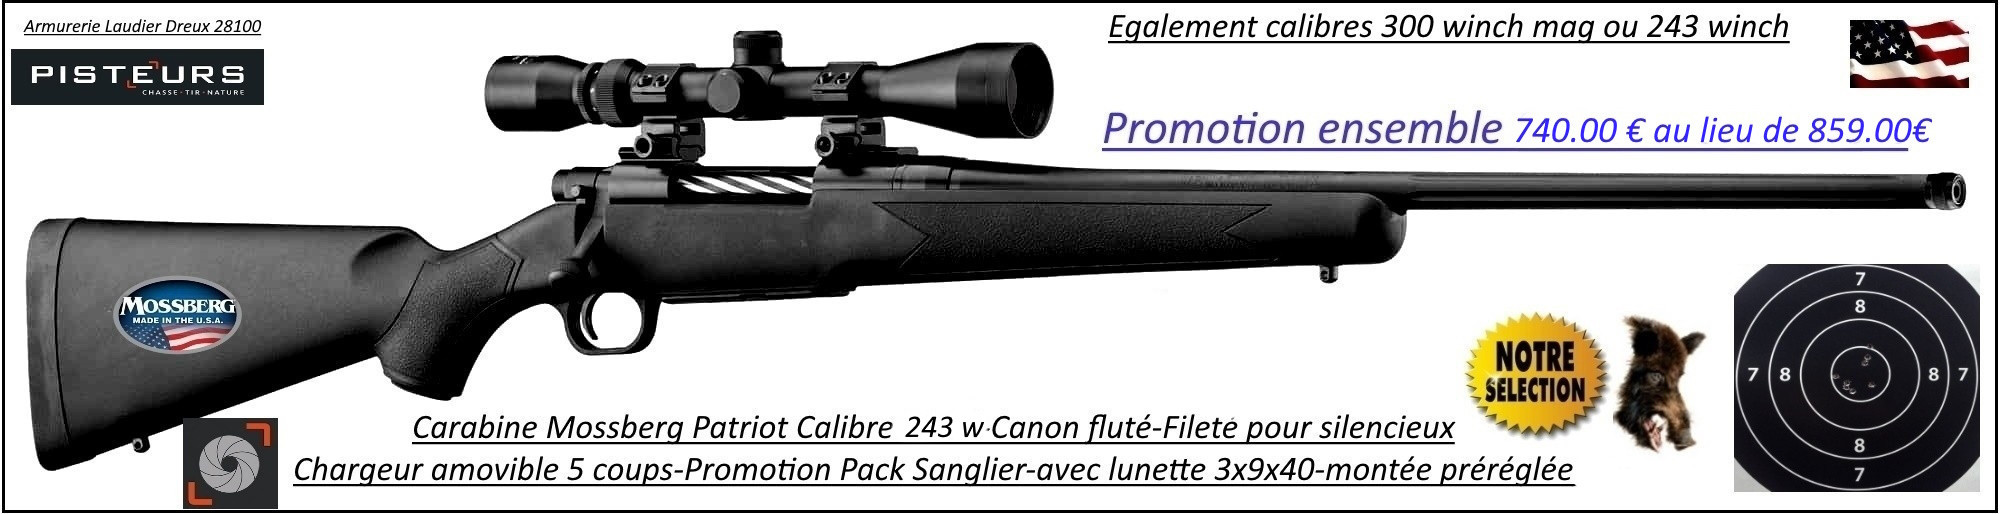 Carabine Mossberg Patriot Calibre 243 winch Répétition Pack  sanglier complet-Lunette -3x9x40 Canon-FILETE-POUR-SILENCIEUX -Promotion-740 € ttc au lieu de 859 € ttc-Ref PCKMO2430F-ea